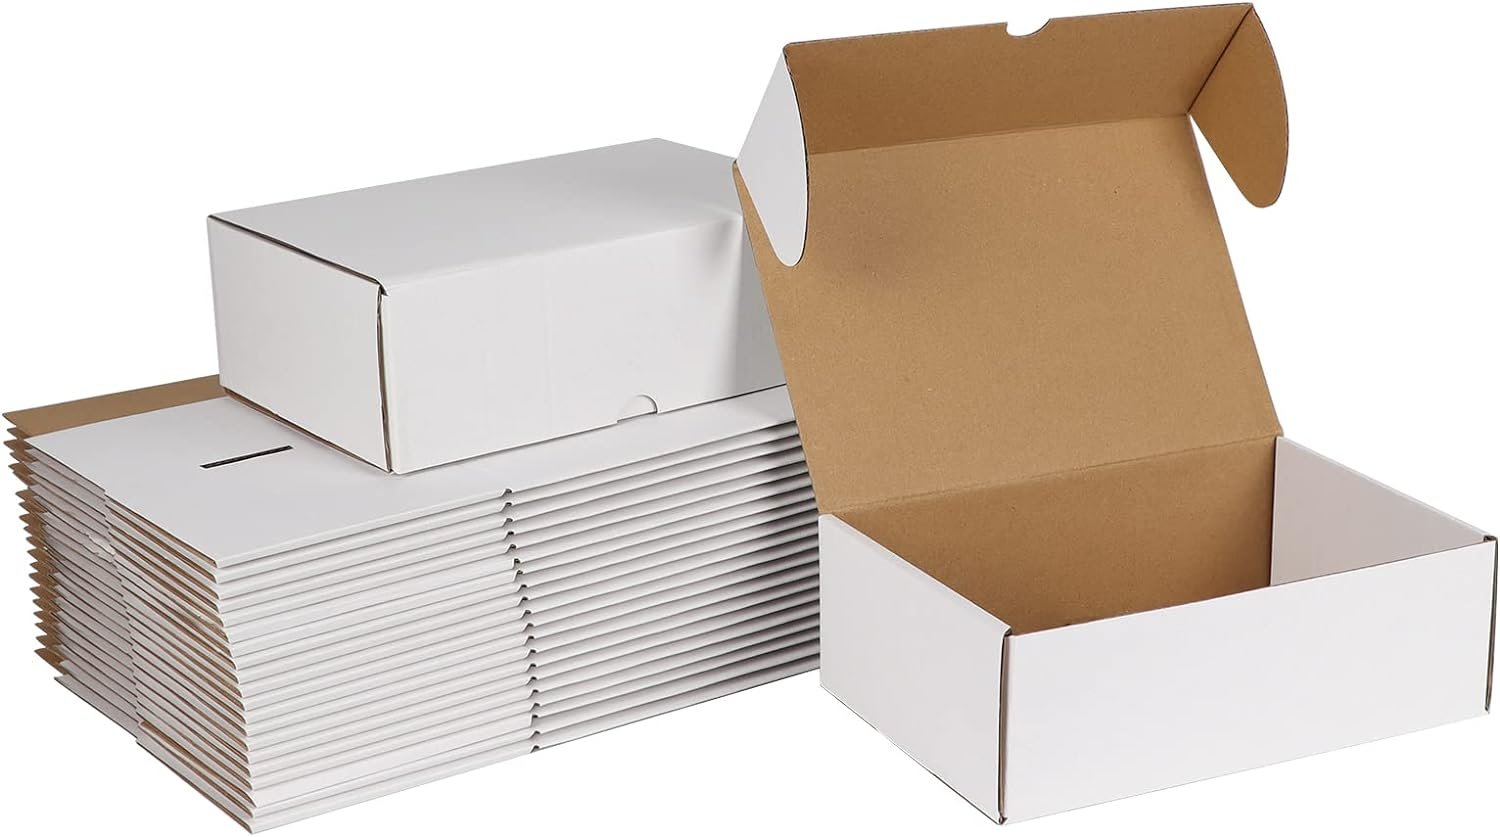 ZBEIVAN 12x9x3 Black Small Shipping Boxes Review